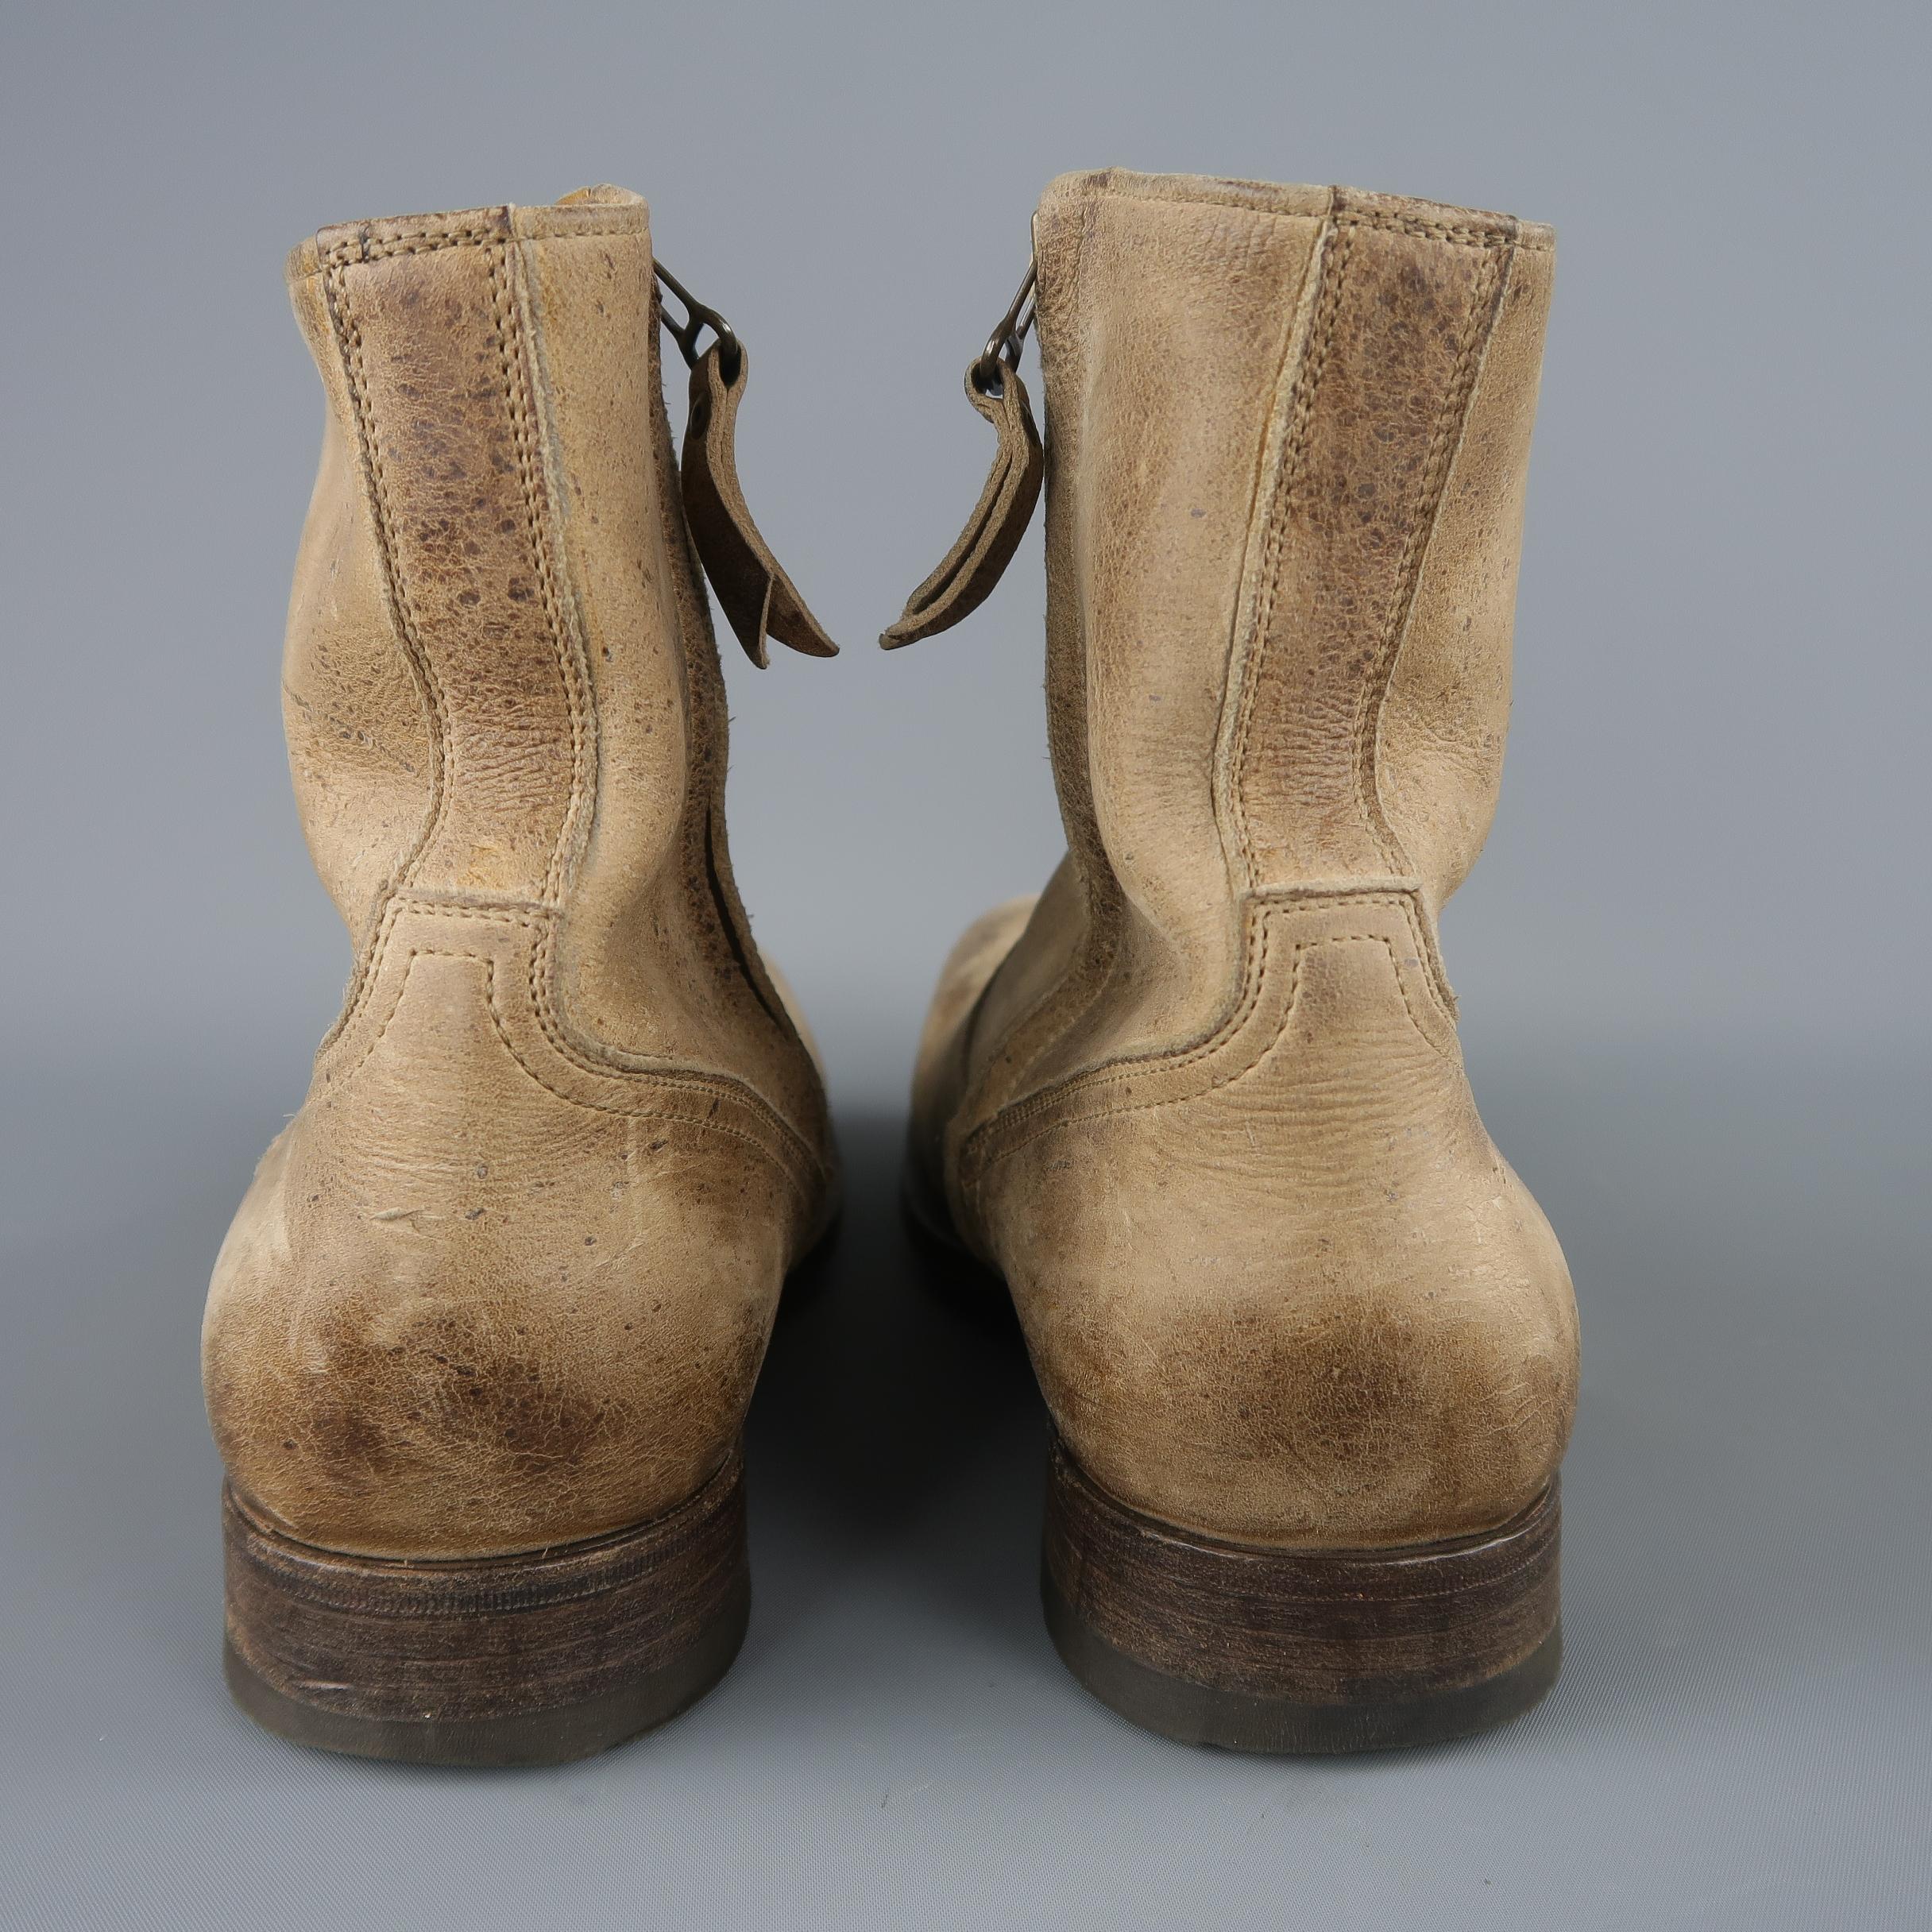 n.d.c. boots